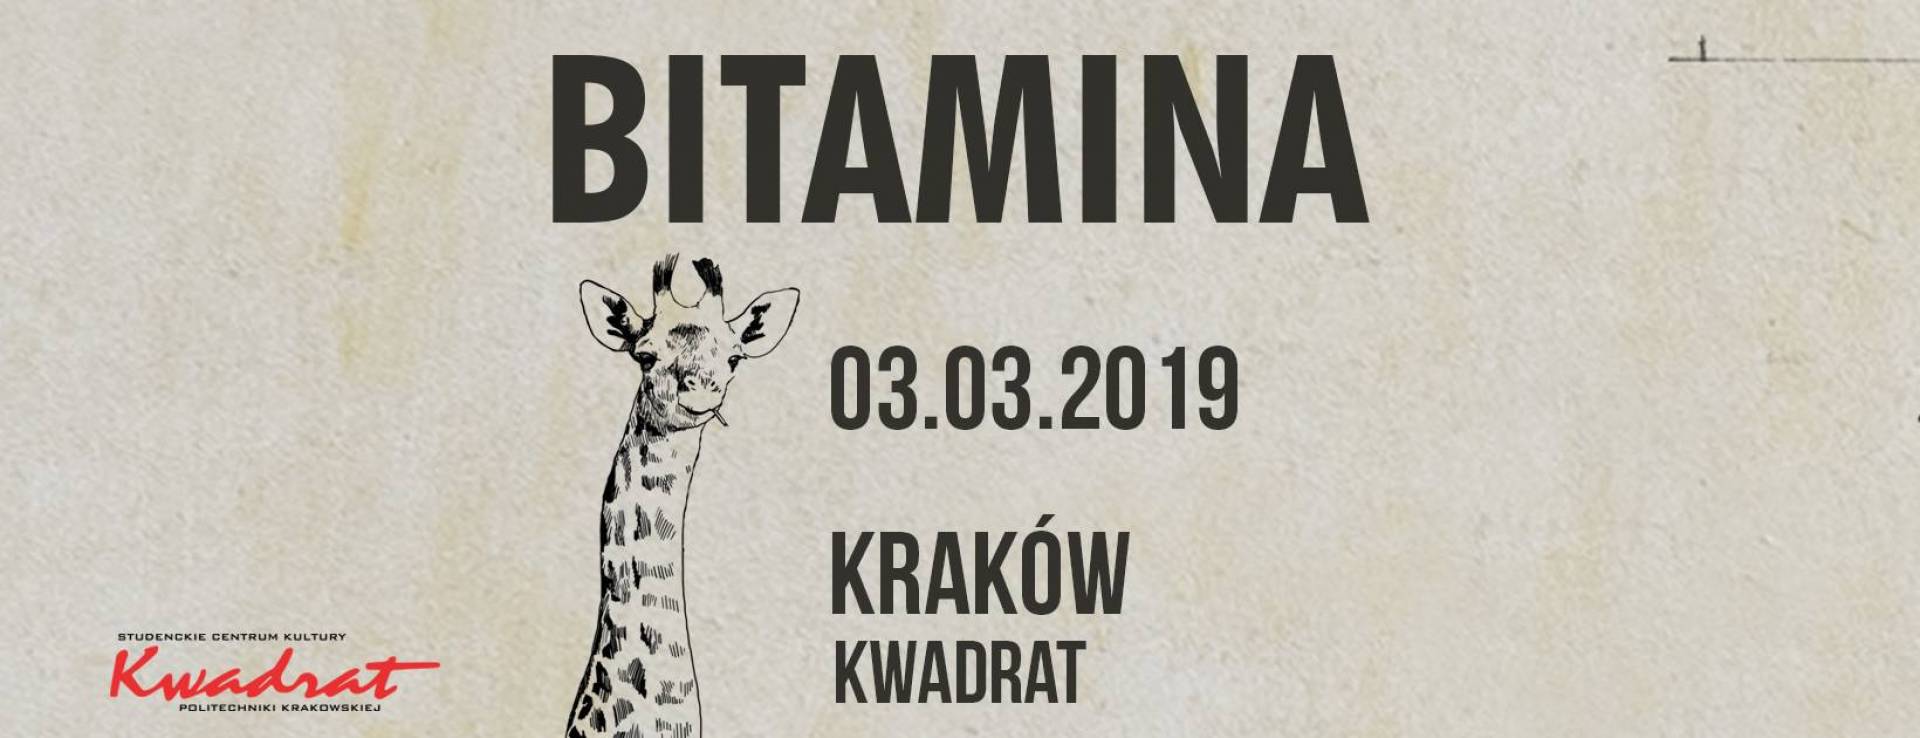 Bitamina w Krakowie!